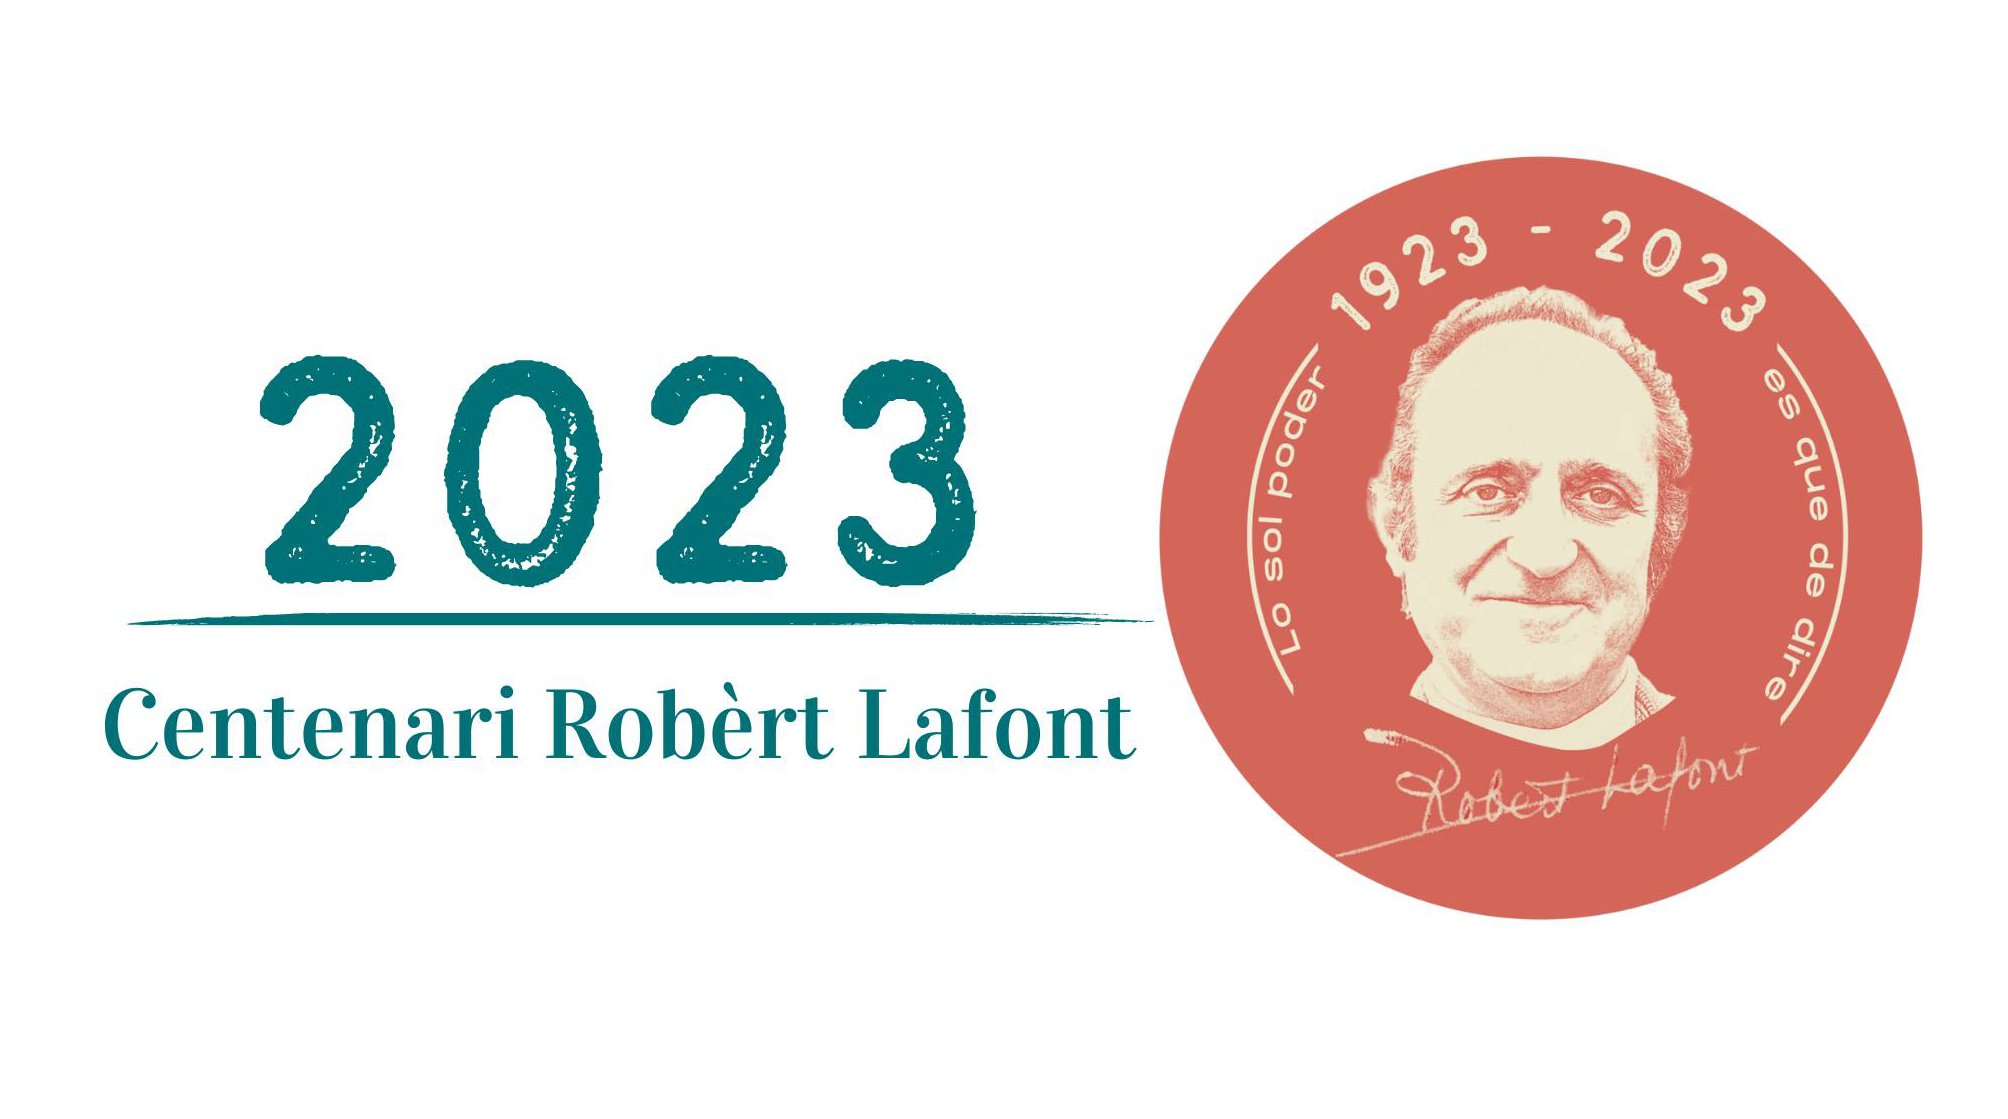 Centenari Robèrt Lafont